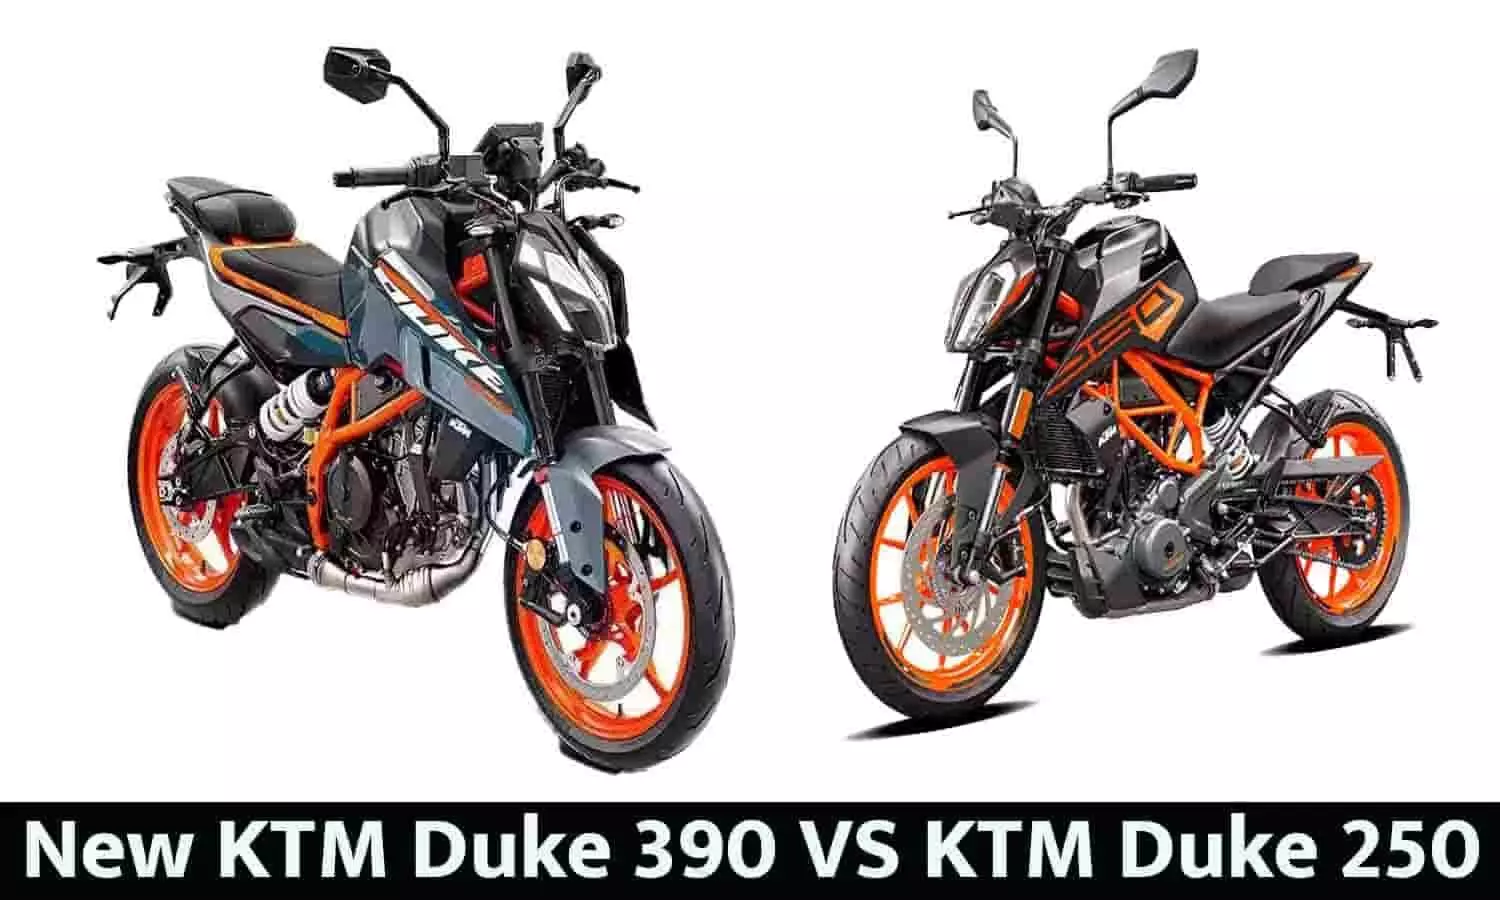 New KTM Duke 390 VS KTM Duke 250